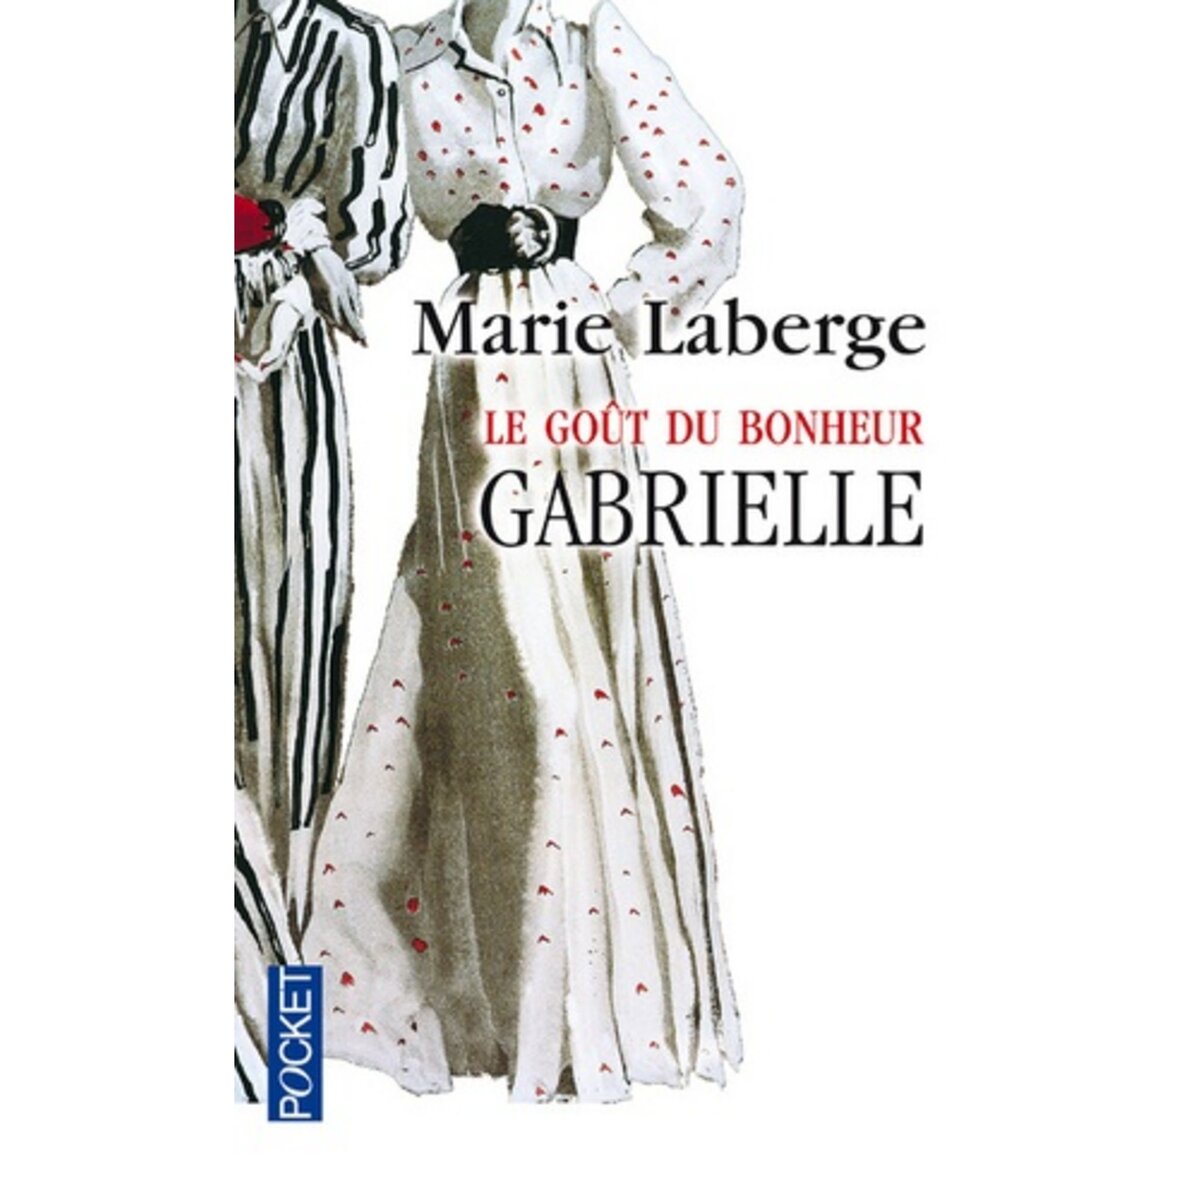  LE GOUT DU BONHEUR TOME 1 : GABRIELLE, Laberge Marie